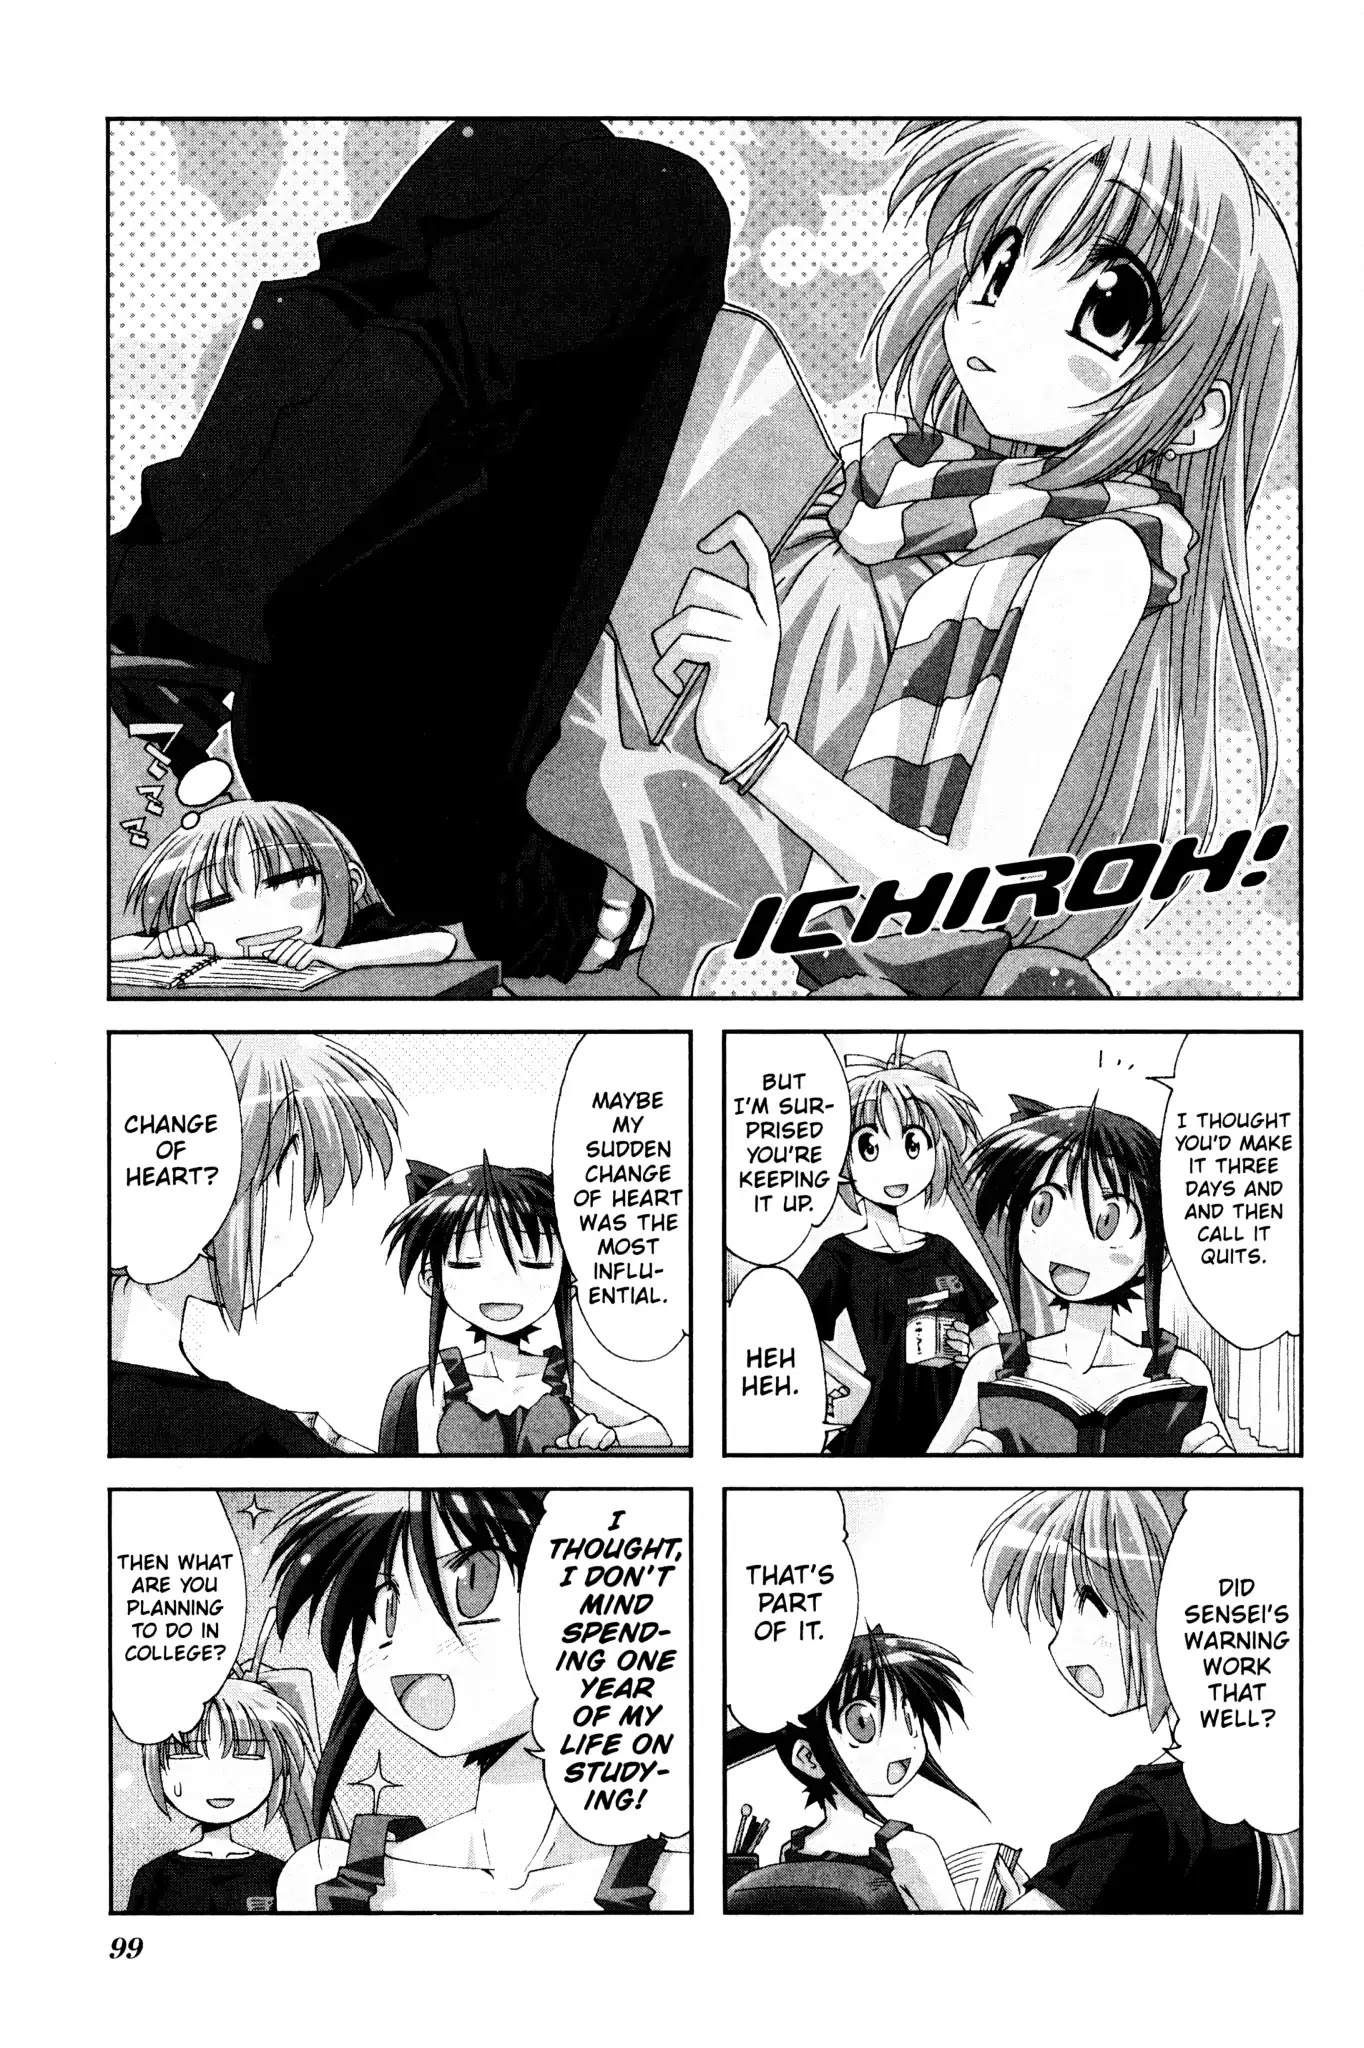 Ichiroh! - Page 1